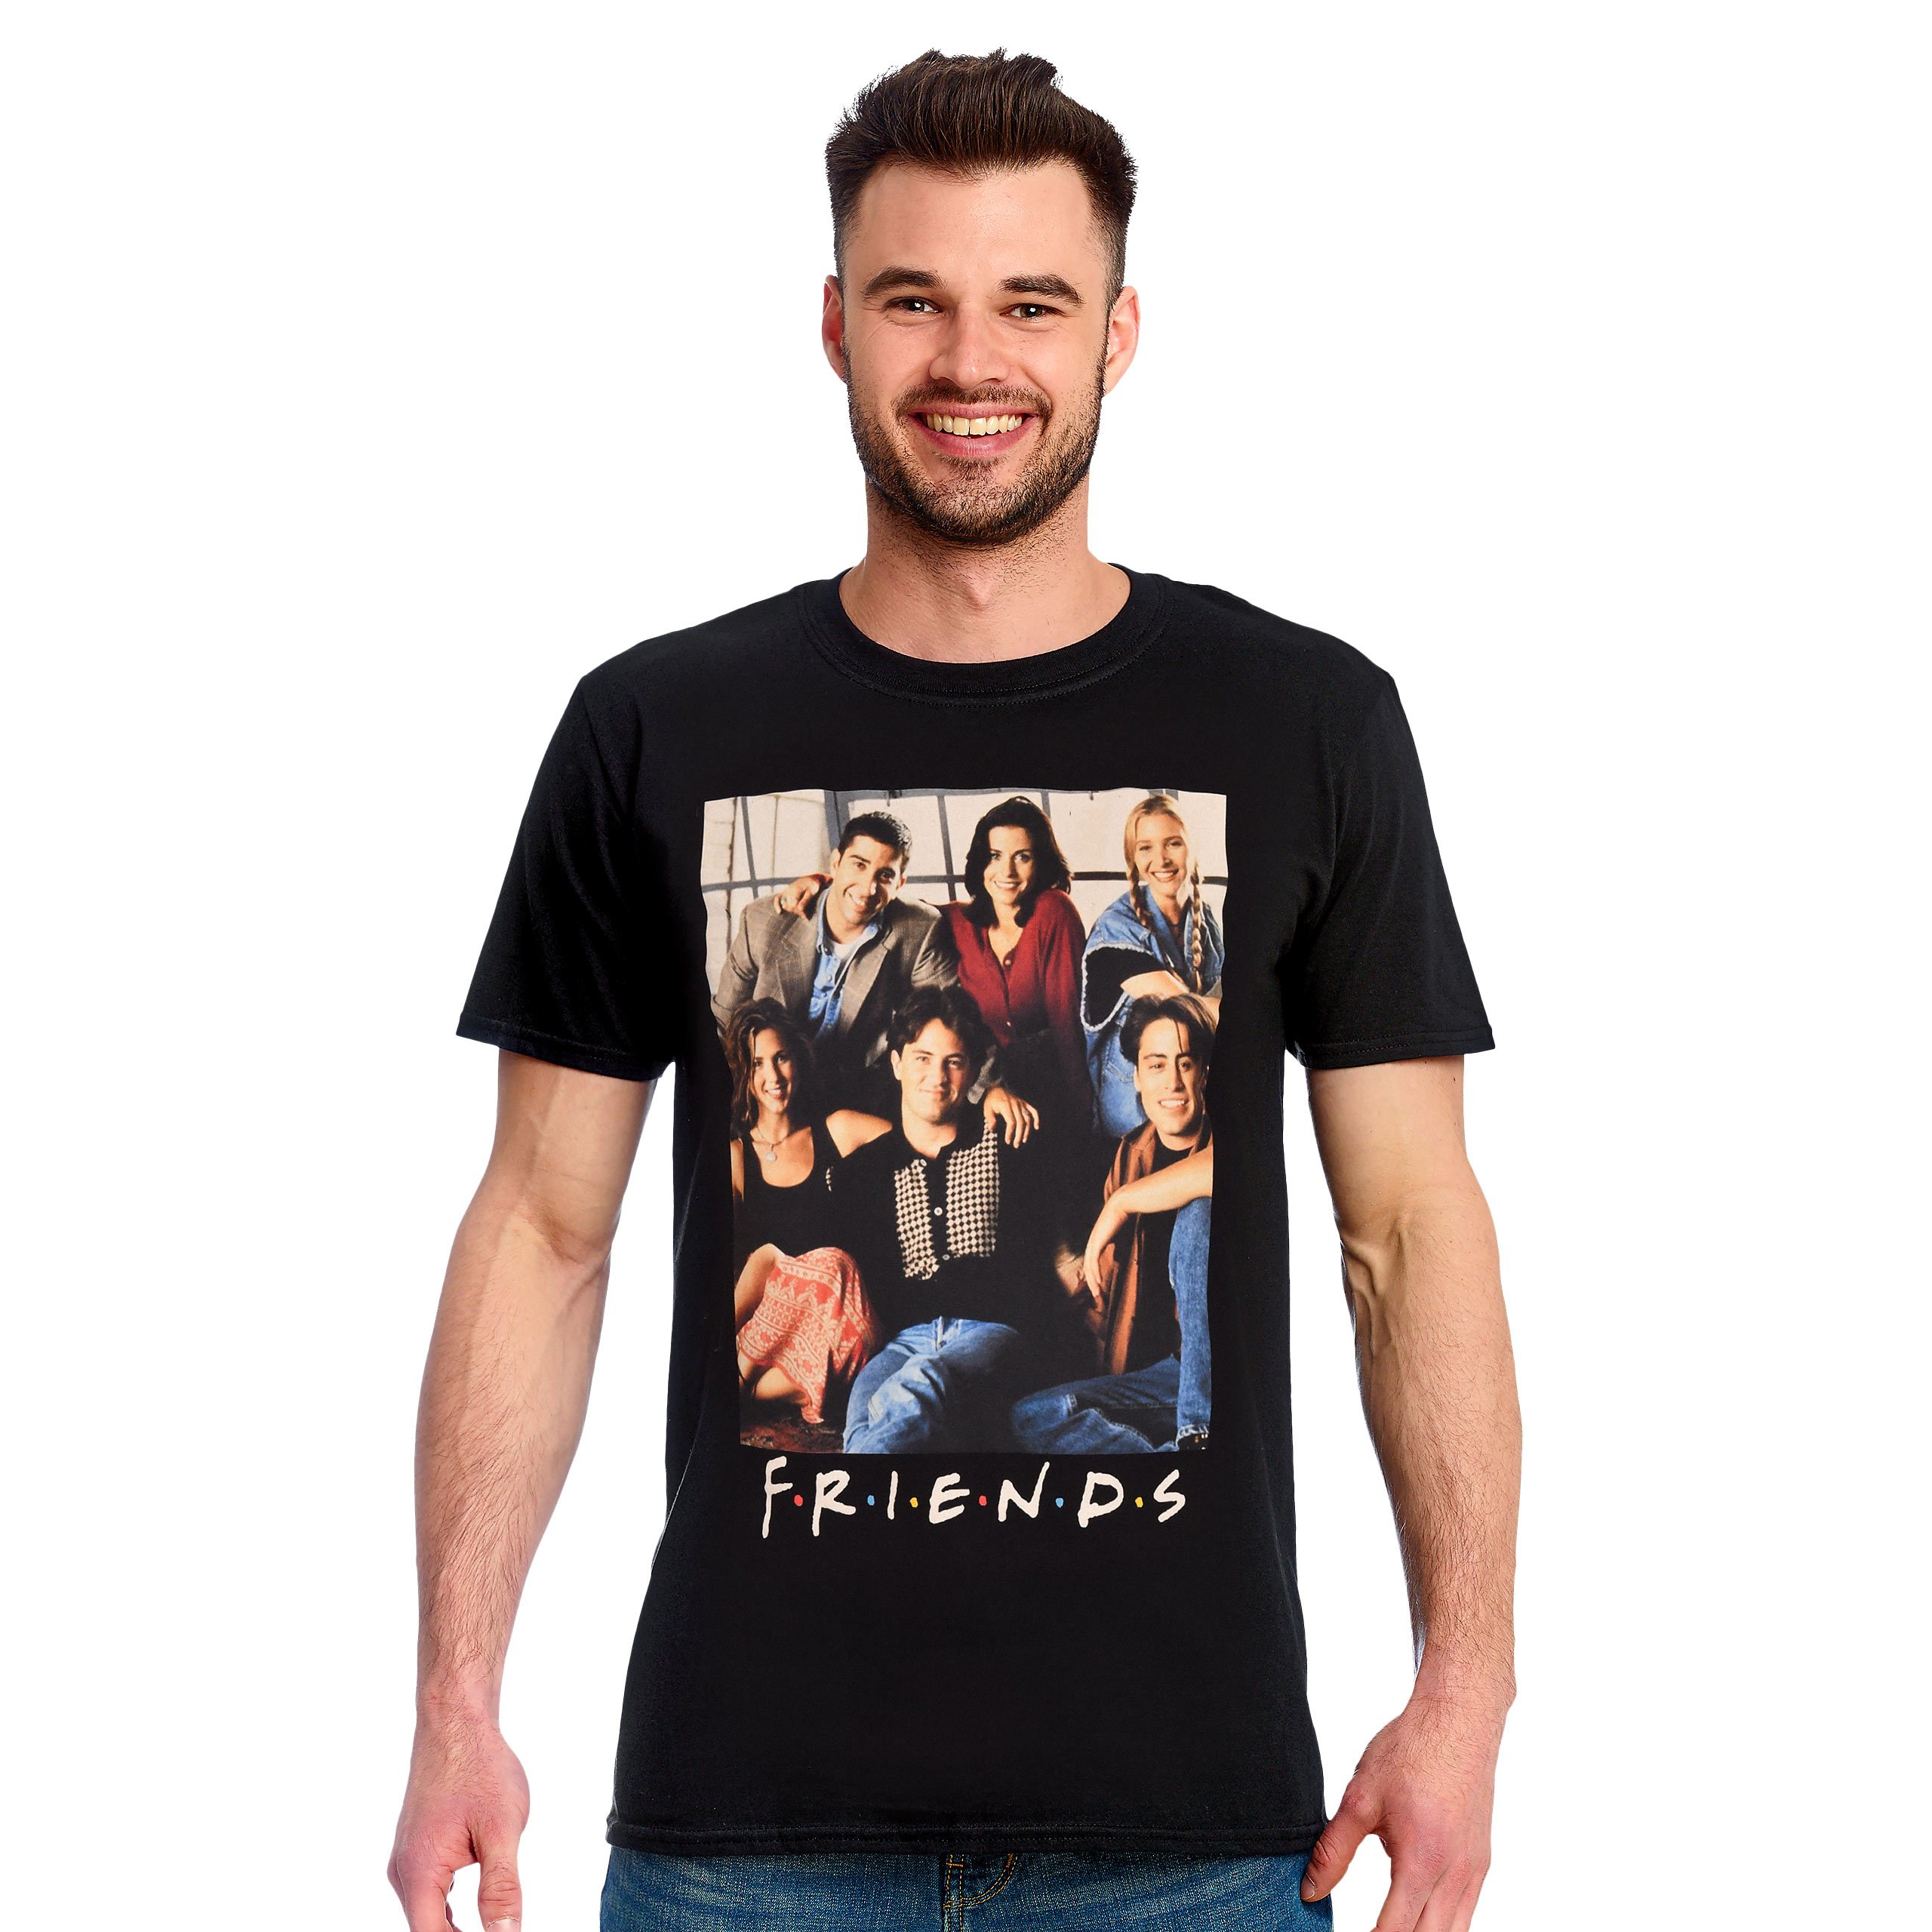 Friends - Groep T-shirt zwart